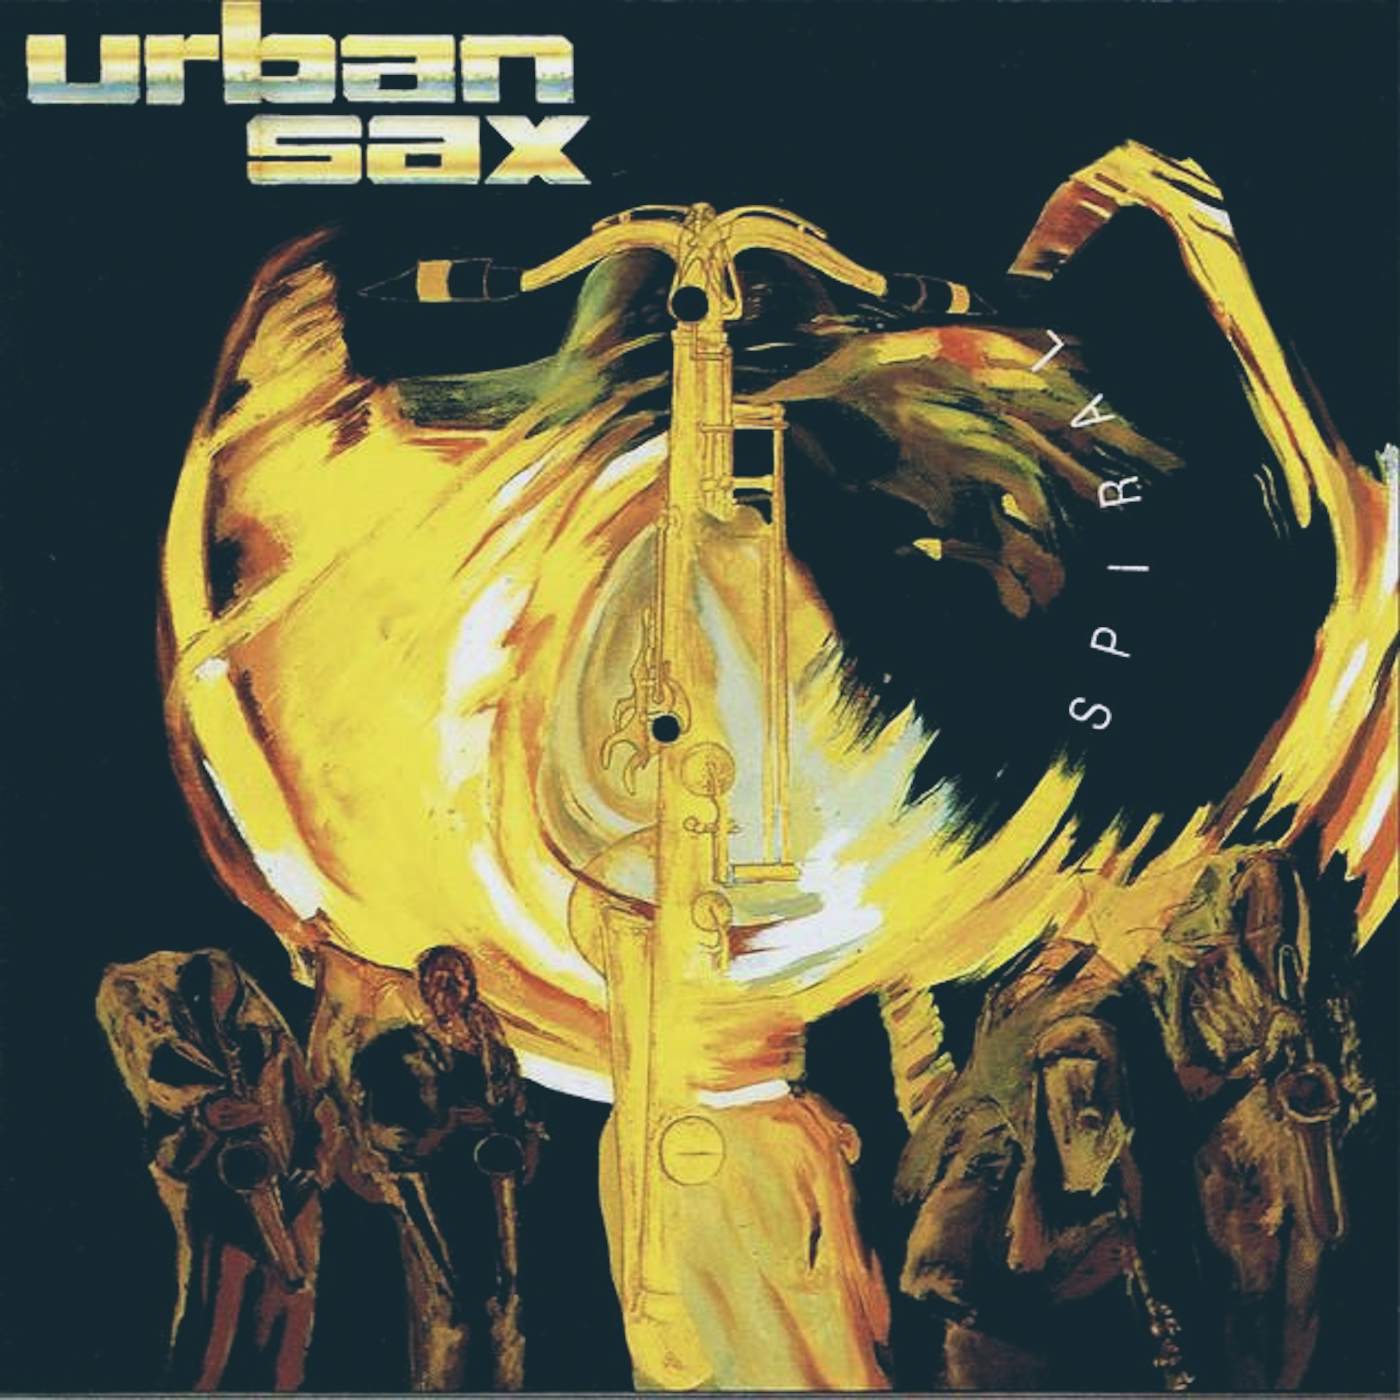 Urban Sax